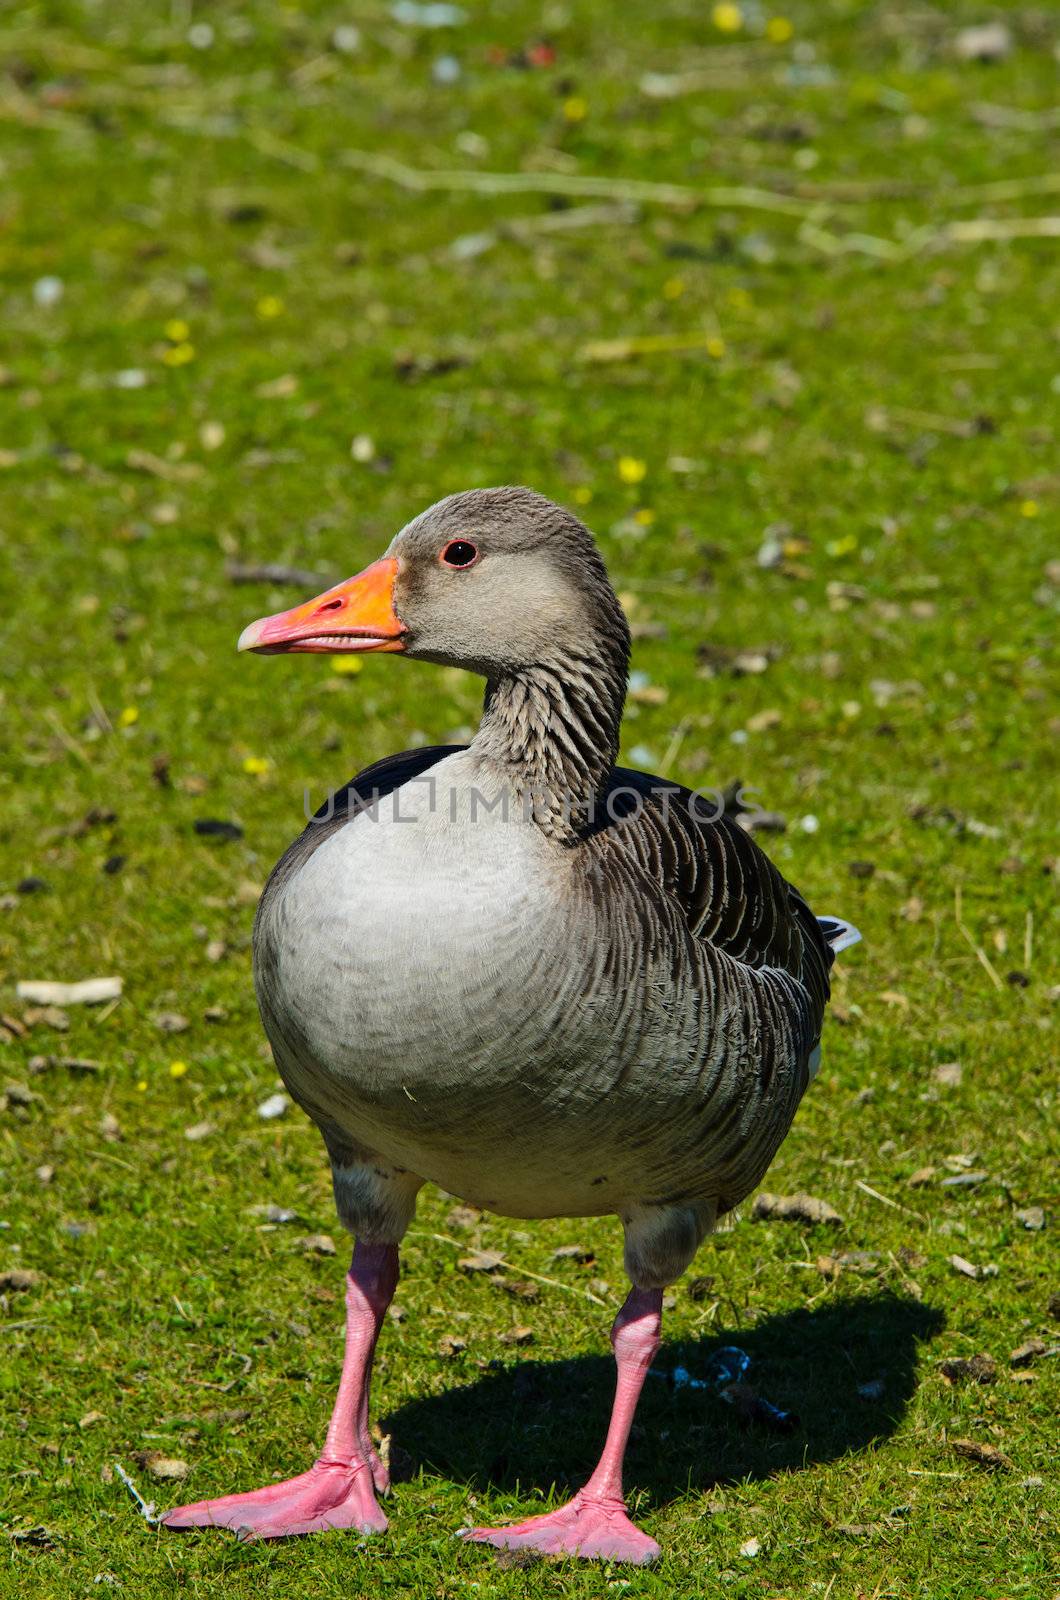 Wild duck on grass background